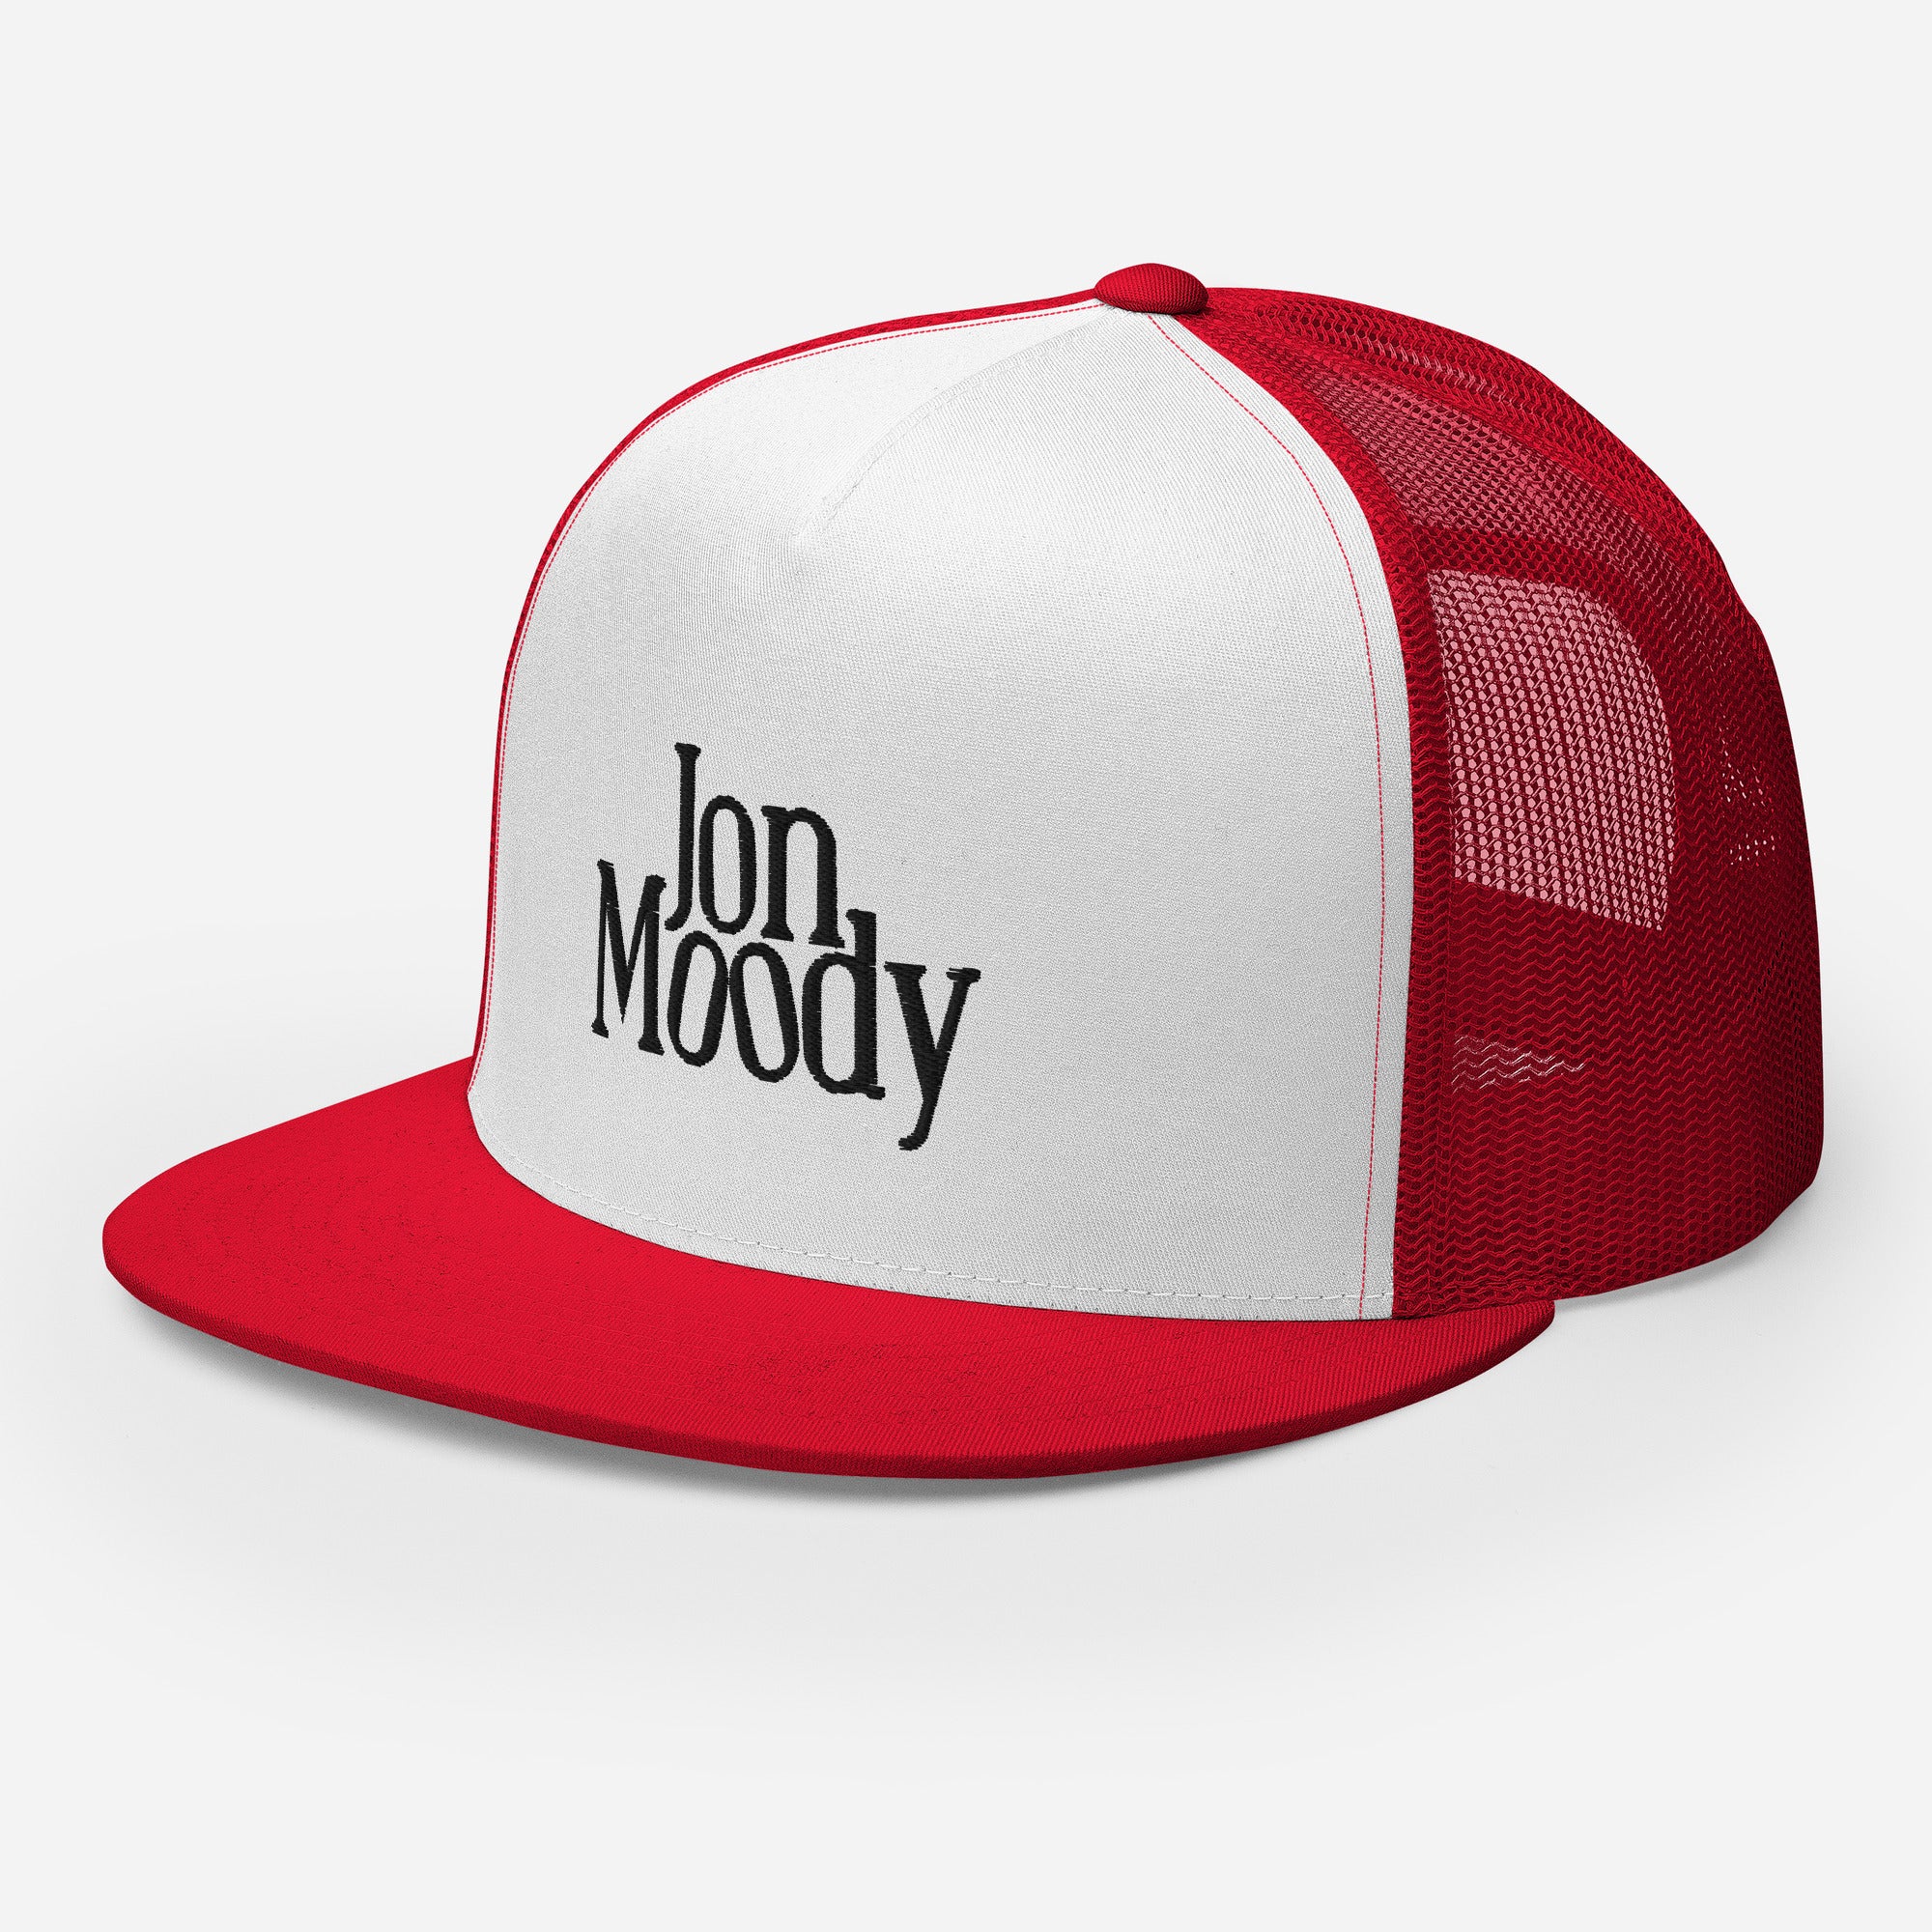 Jon Moody - Trucker Cap